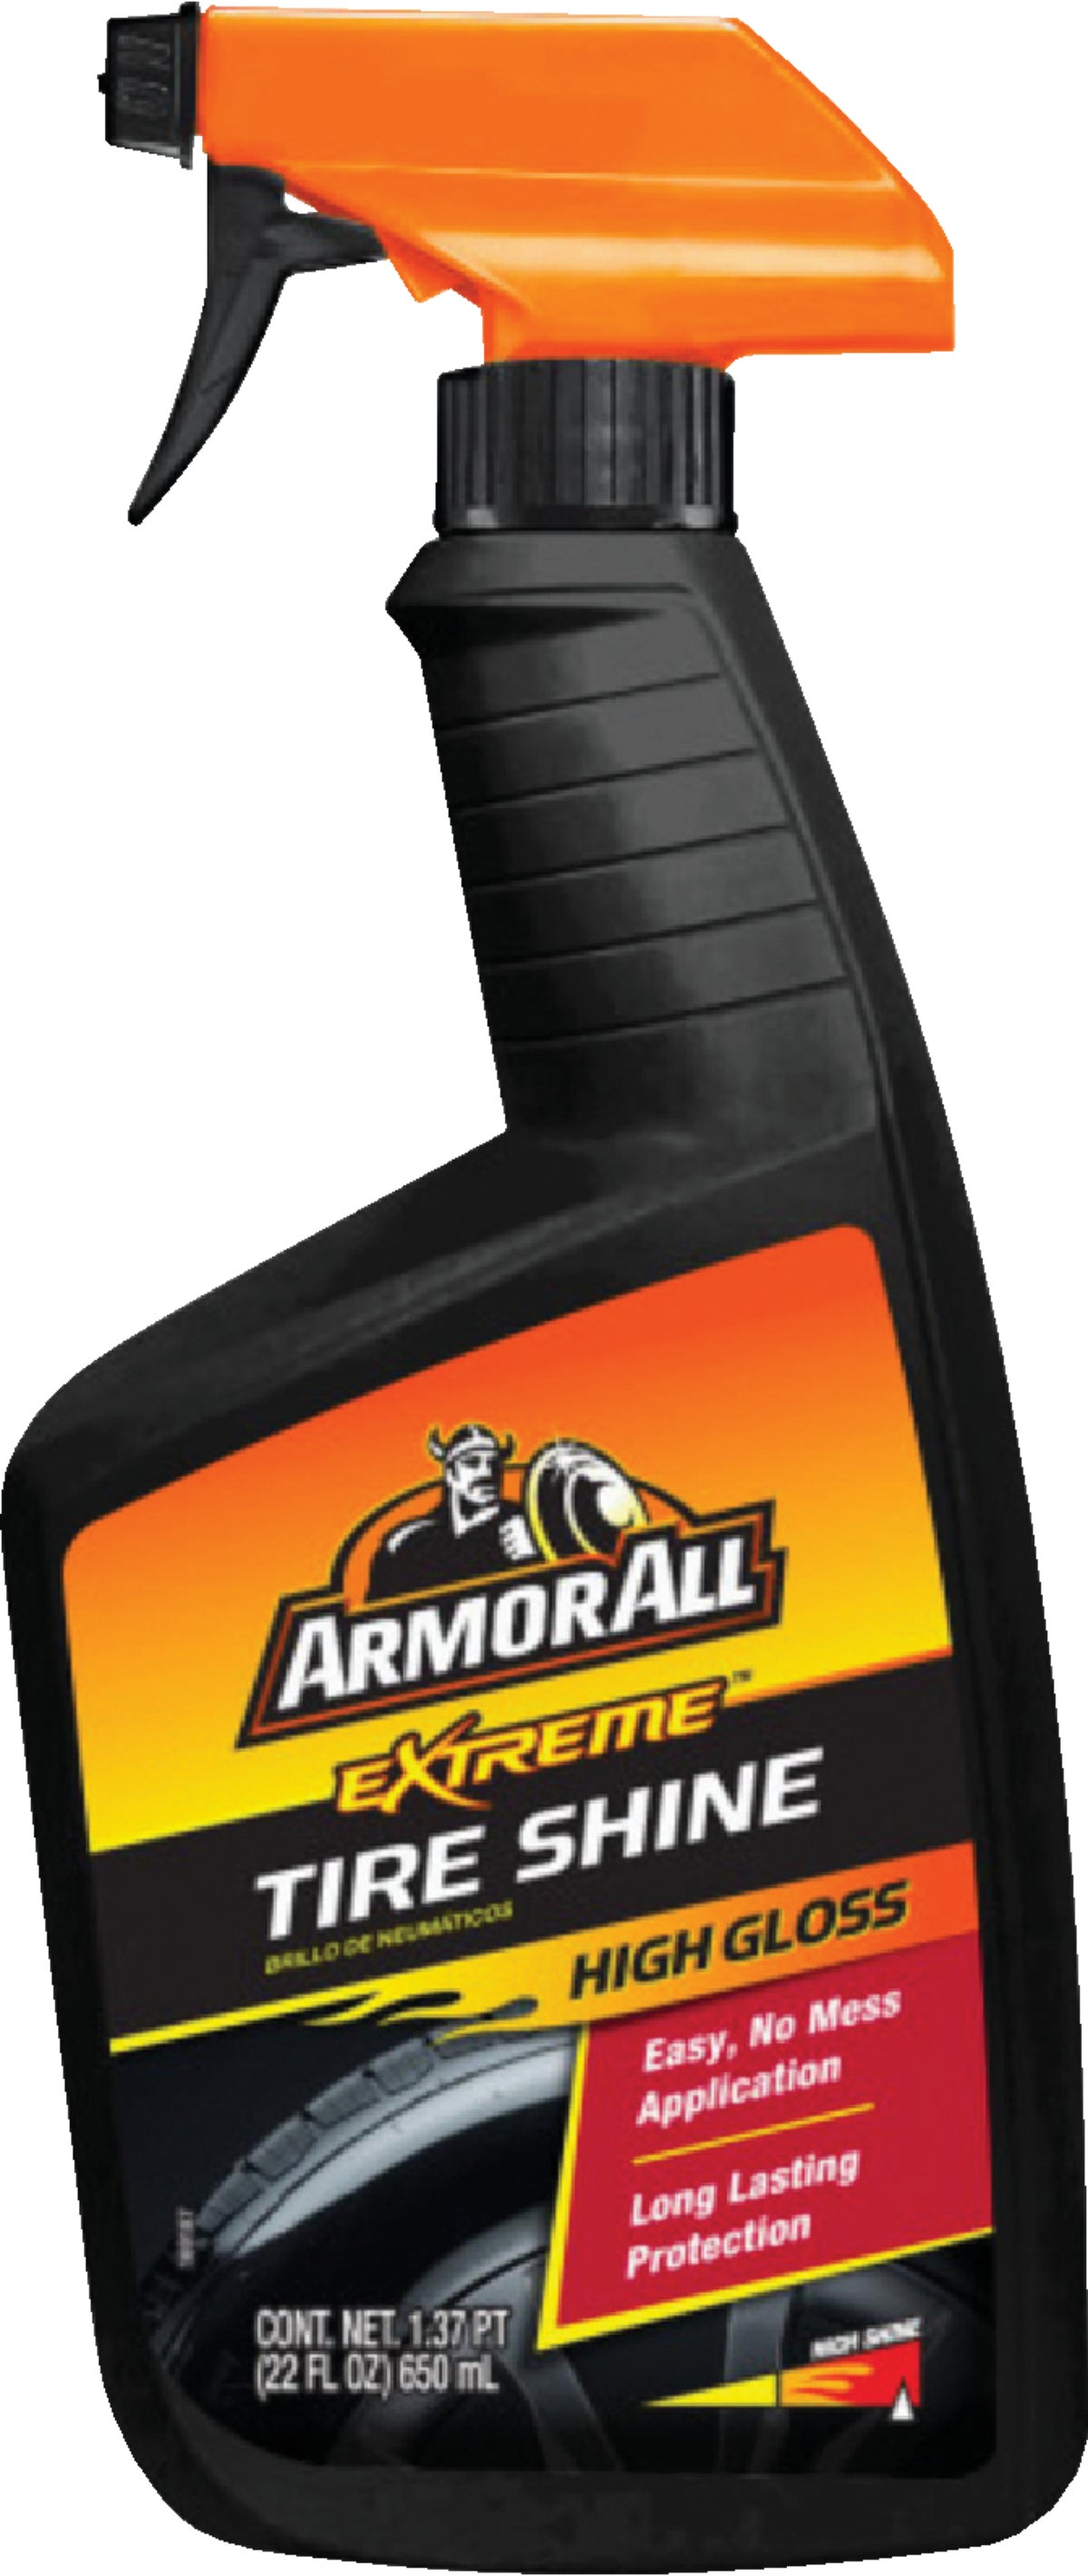  Armor All 78004 Extreme Tire Shine, 22 oz. Trigger